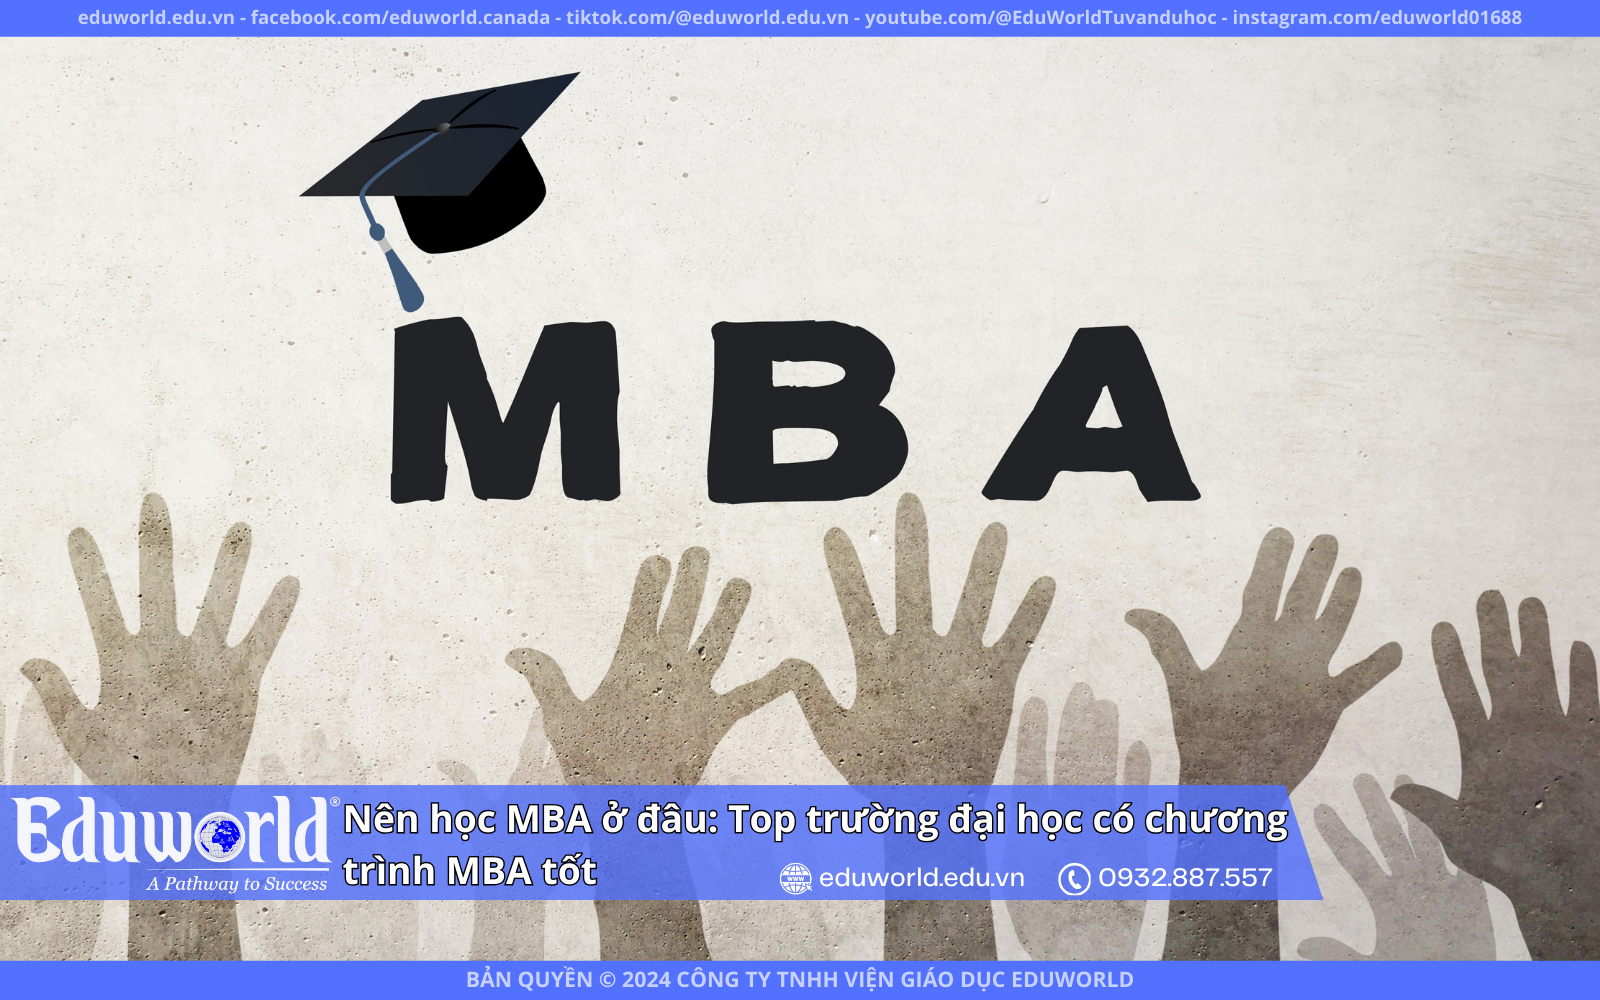 Nên học MBA ở đâu: Top trường đại học có chương trình MBA tốt